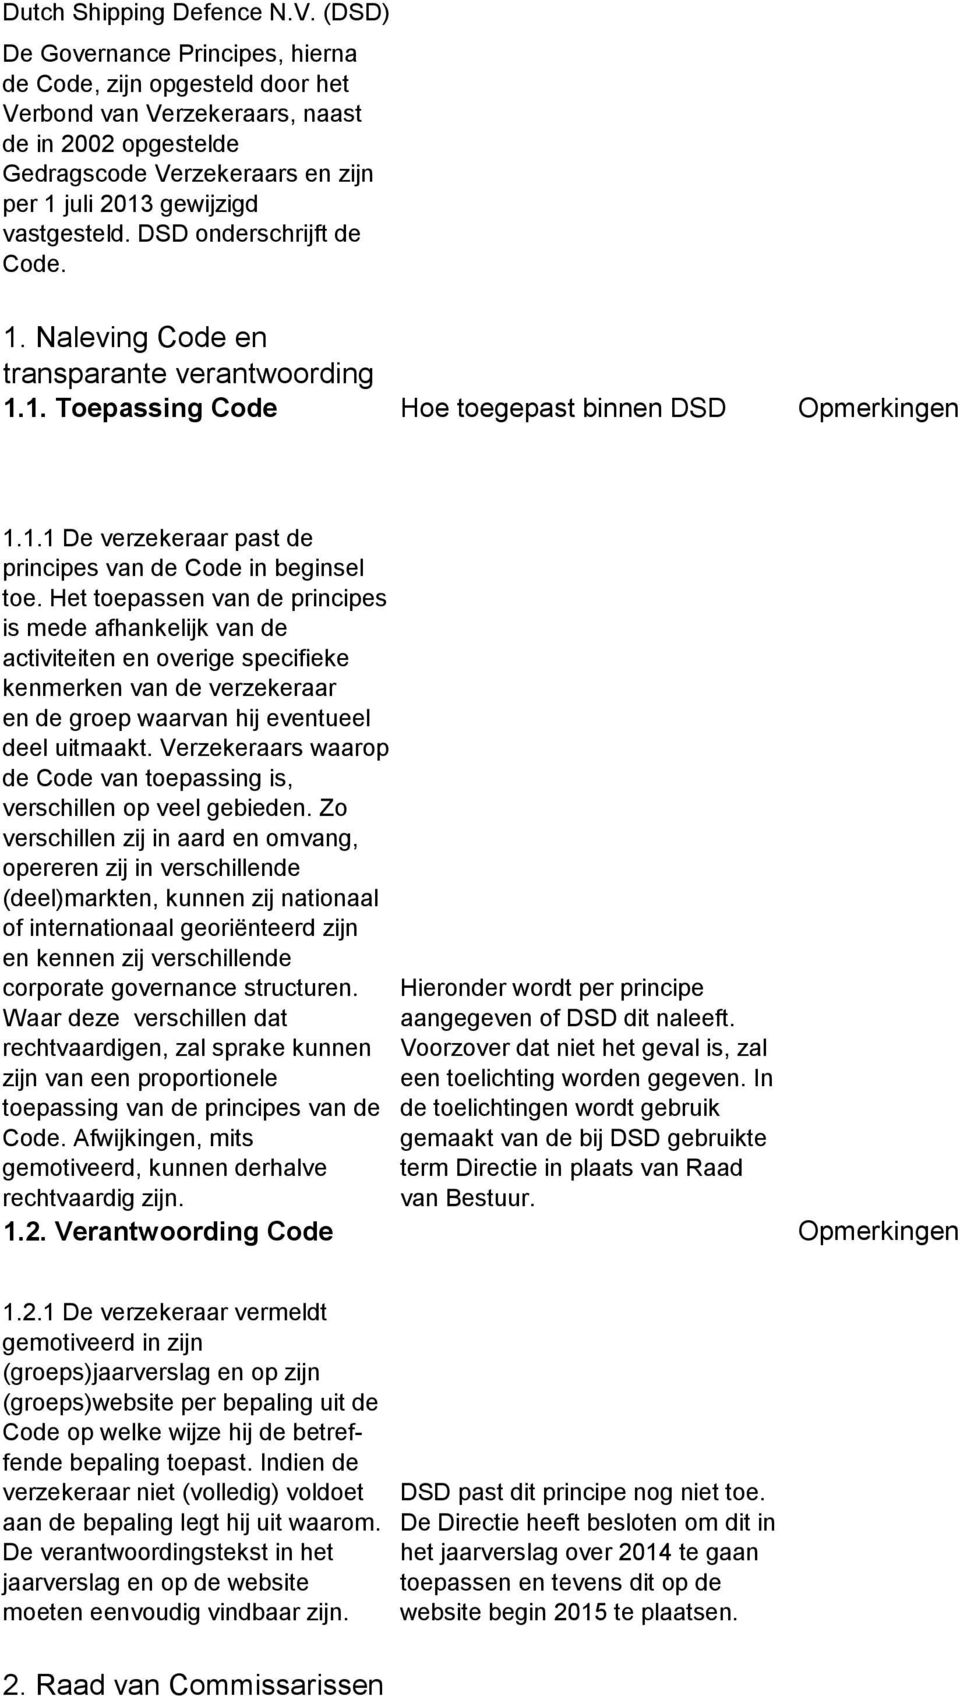 DSD onderschrijft de Code. 1. Naleving Code en transparante verantwoording 1.1. Toepassing Code Hoe toegepast binnen DSD Opmerkingen 1.1.1 De verzekeraar past de principes van de Code in beginsel toe.